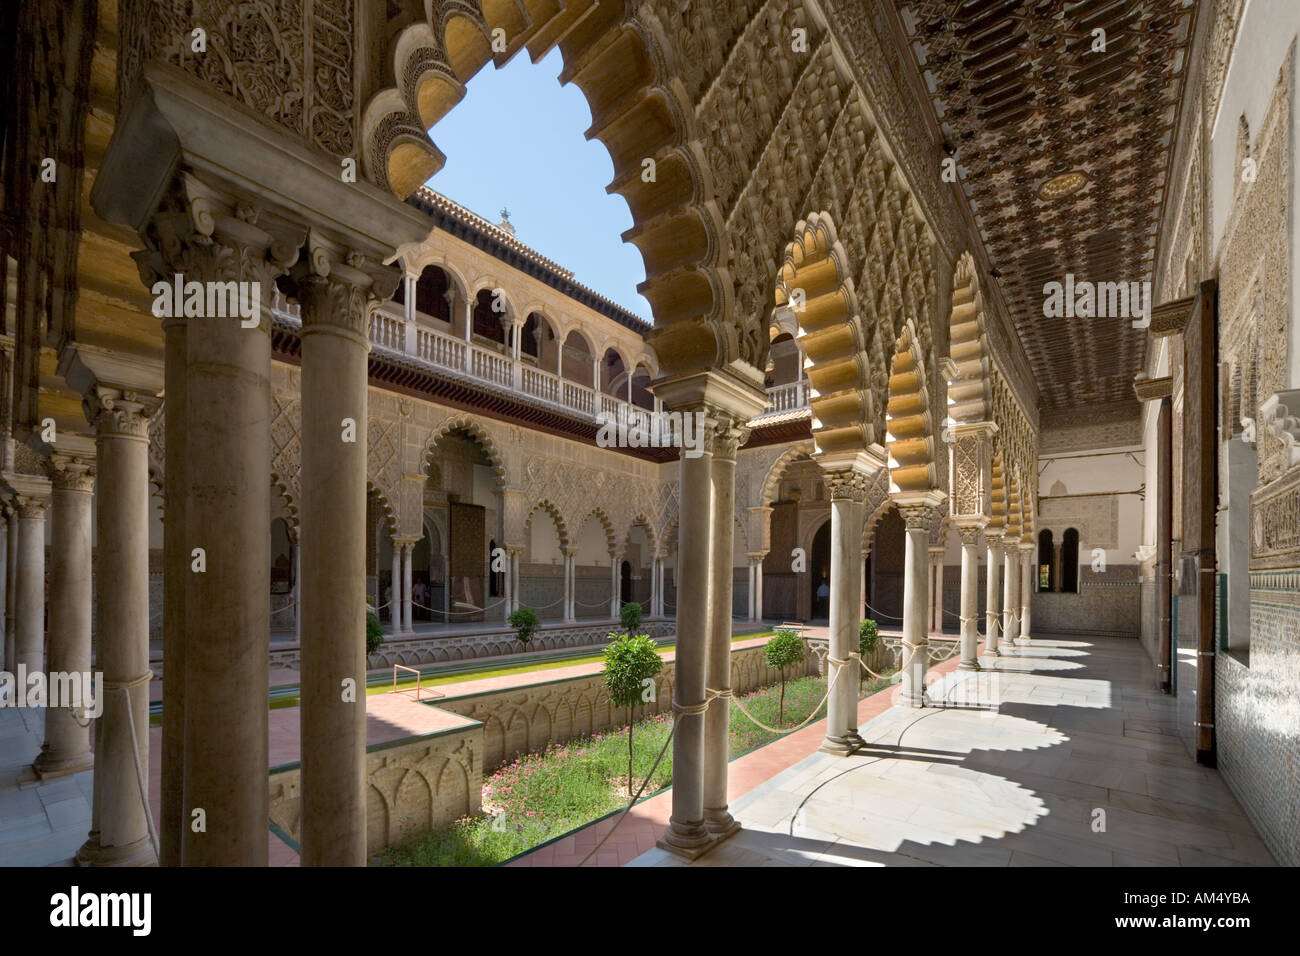 Seville, Alcazar. The Patio de las Doncellas (The Courtyard of the Maidens), Alcazar, Seville, Andalucia, Spain Stock Photo